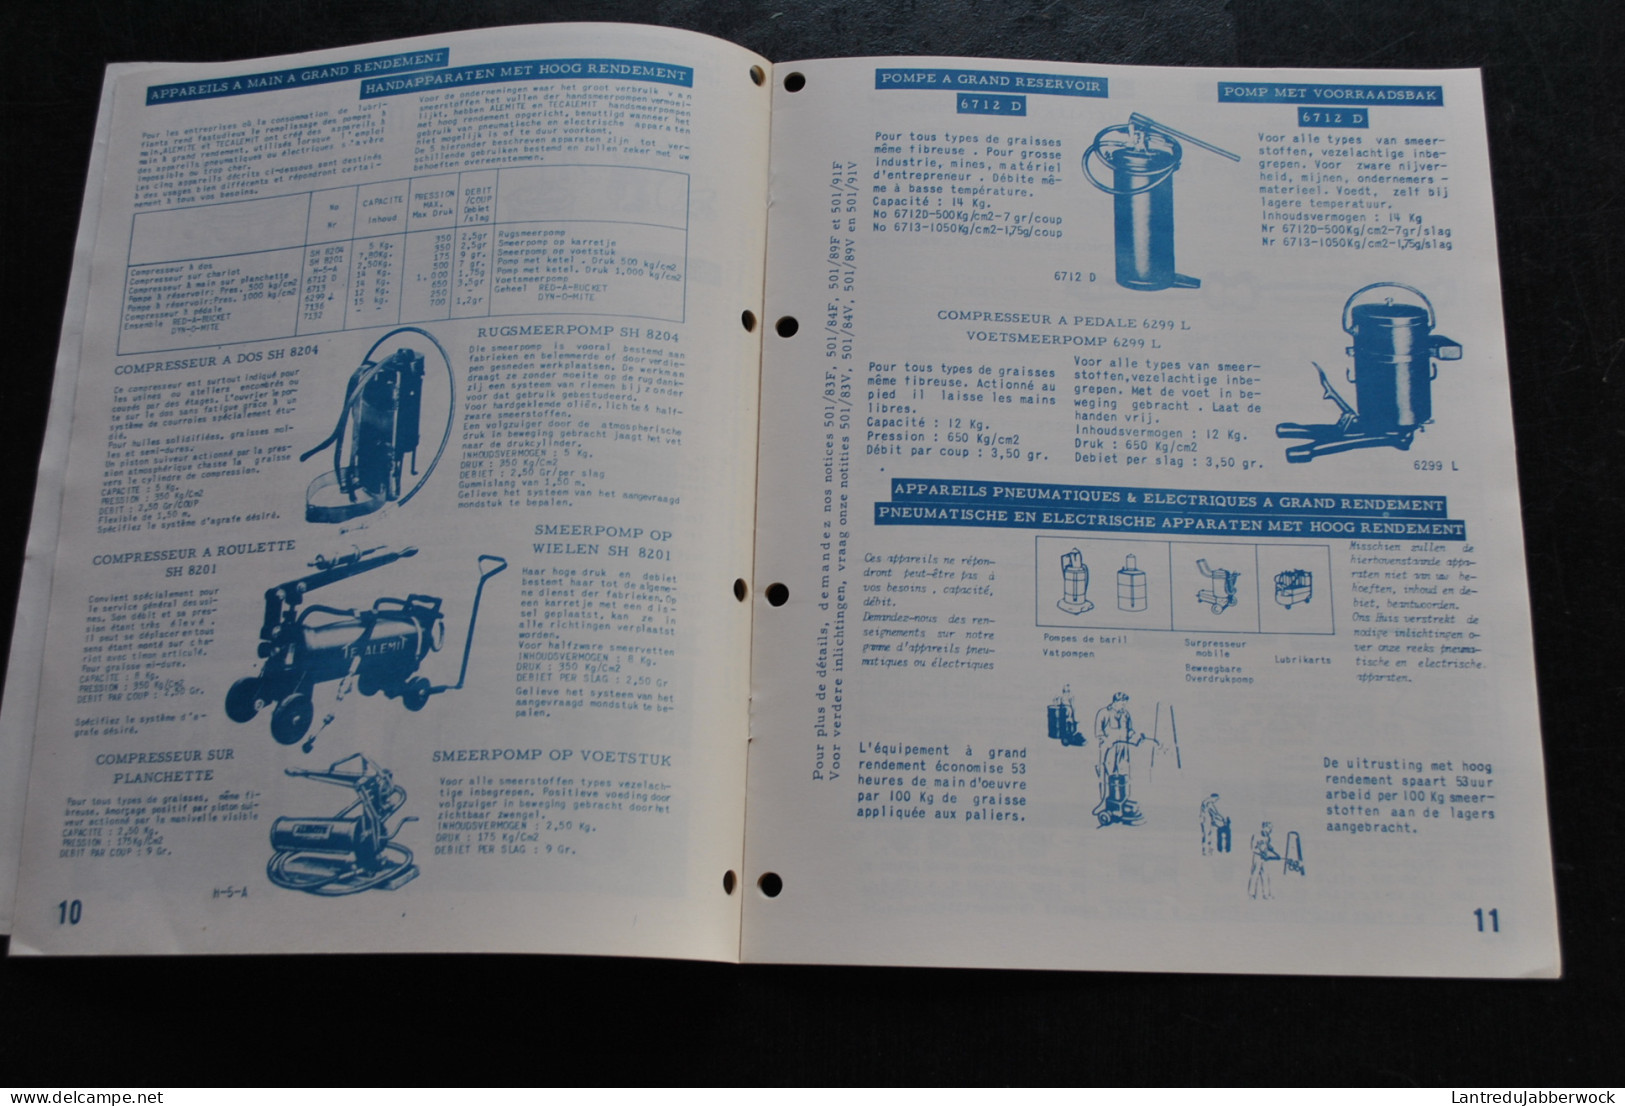 Catalogue De Présentation De Produits TECALEMIT ALEMITE Graissage Smeerapparaten Etablissements Daniel DOYEN 1957? - Bricolage / Técnico